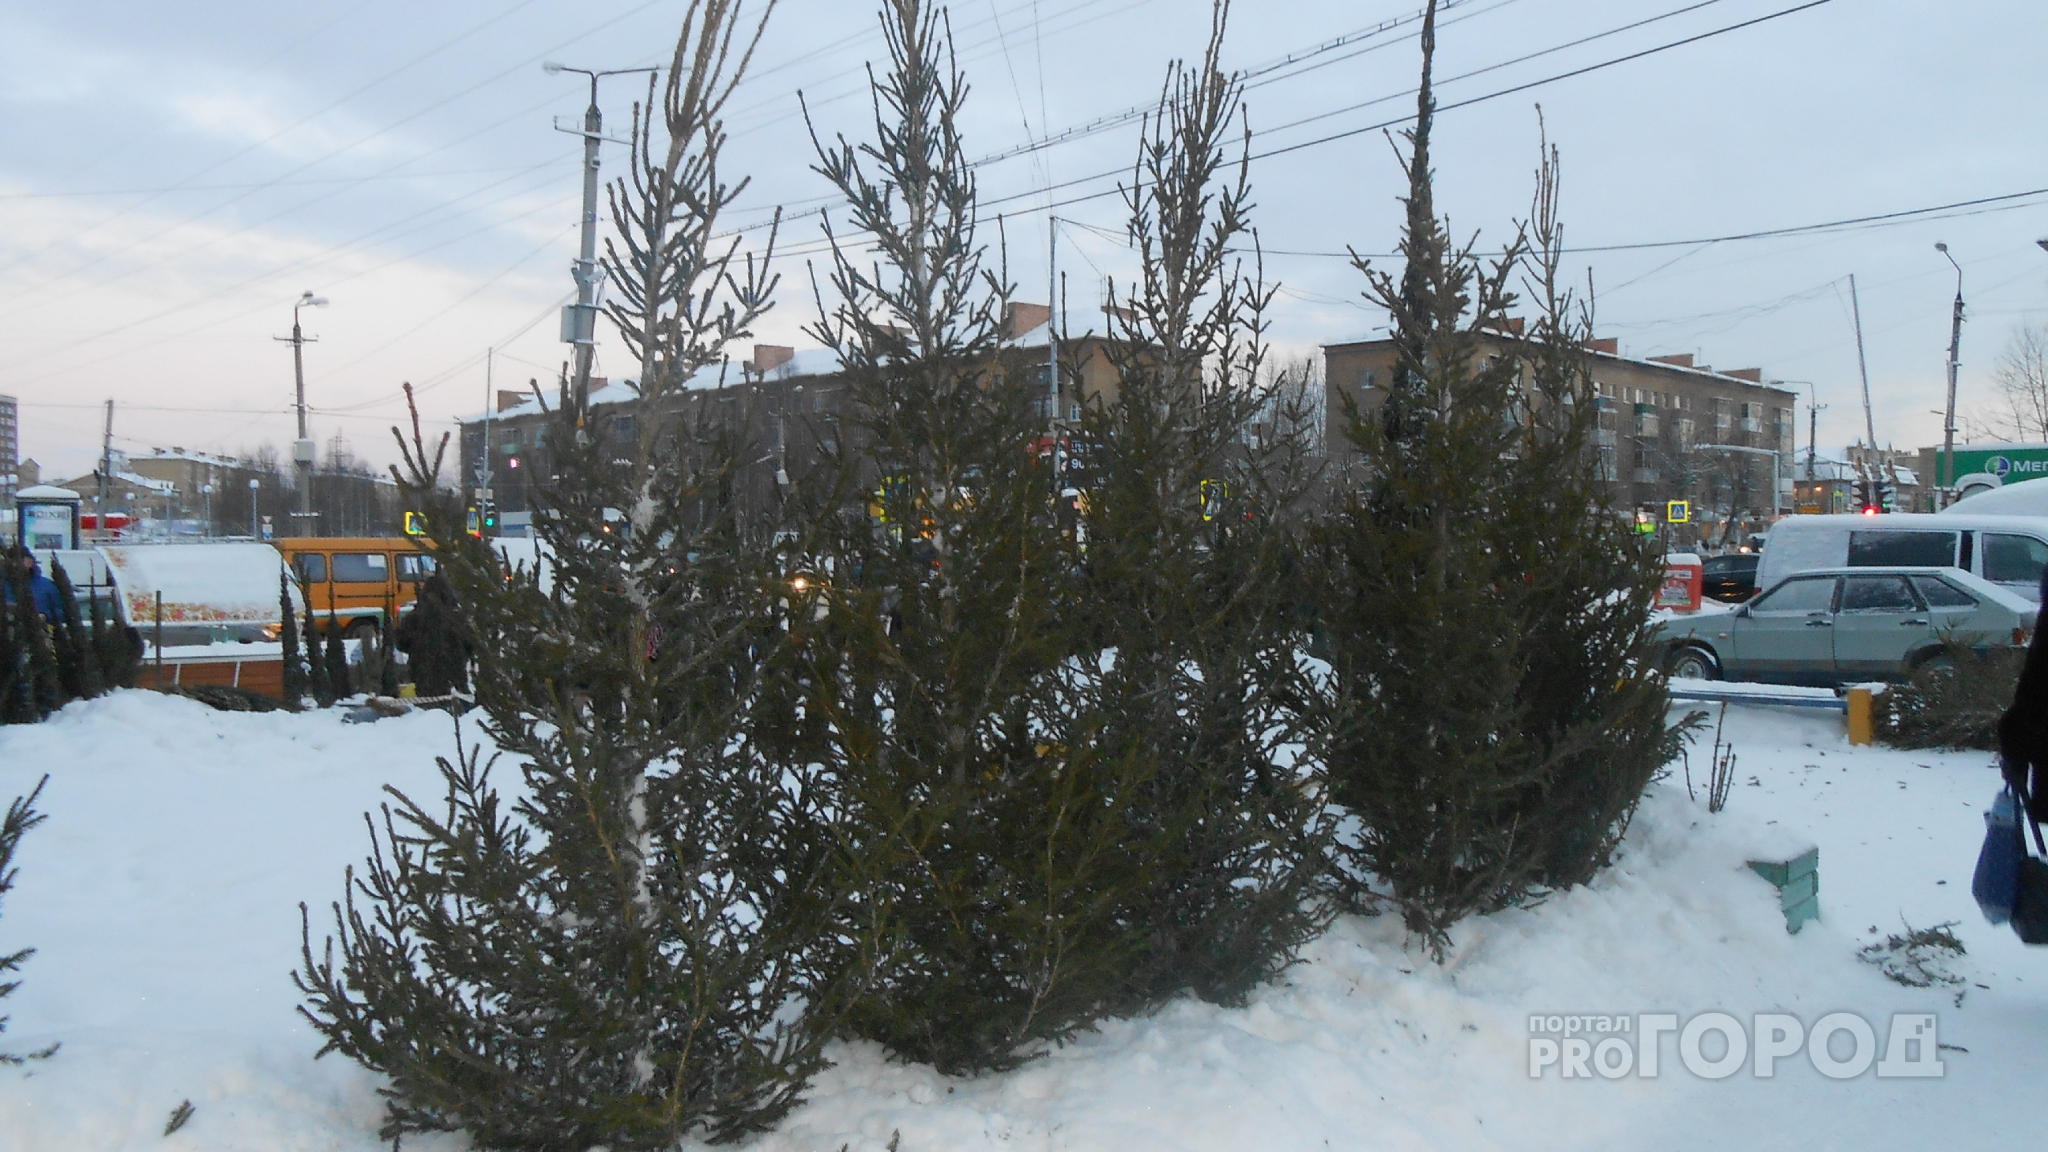 Стало известно, где в Йошкар-Оле будут законно продавать новогодние елки